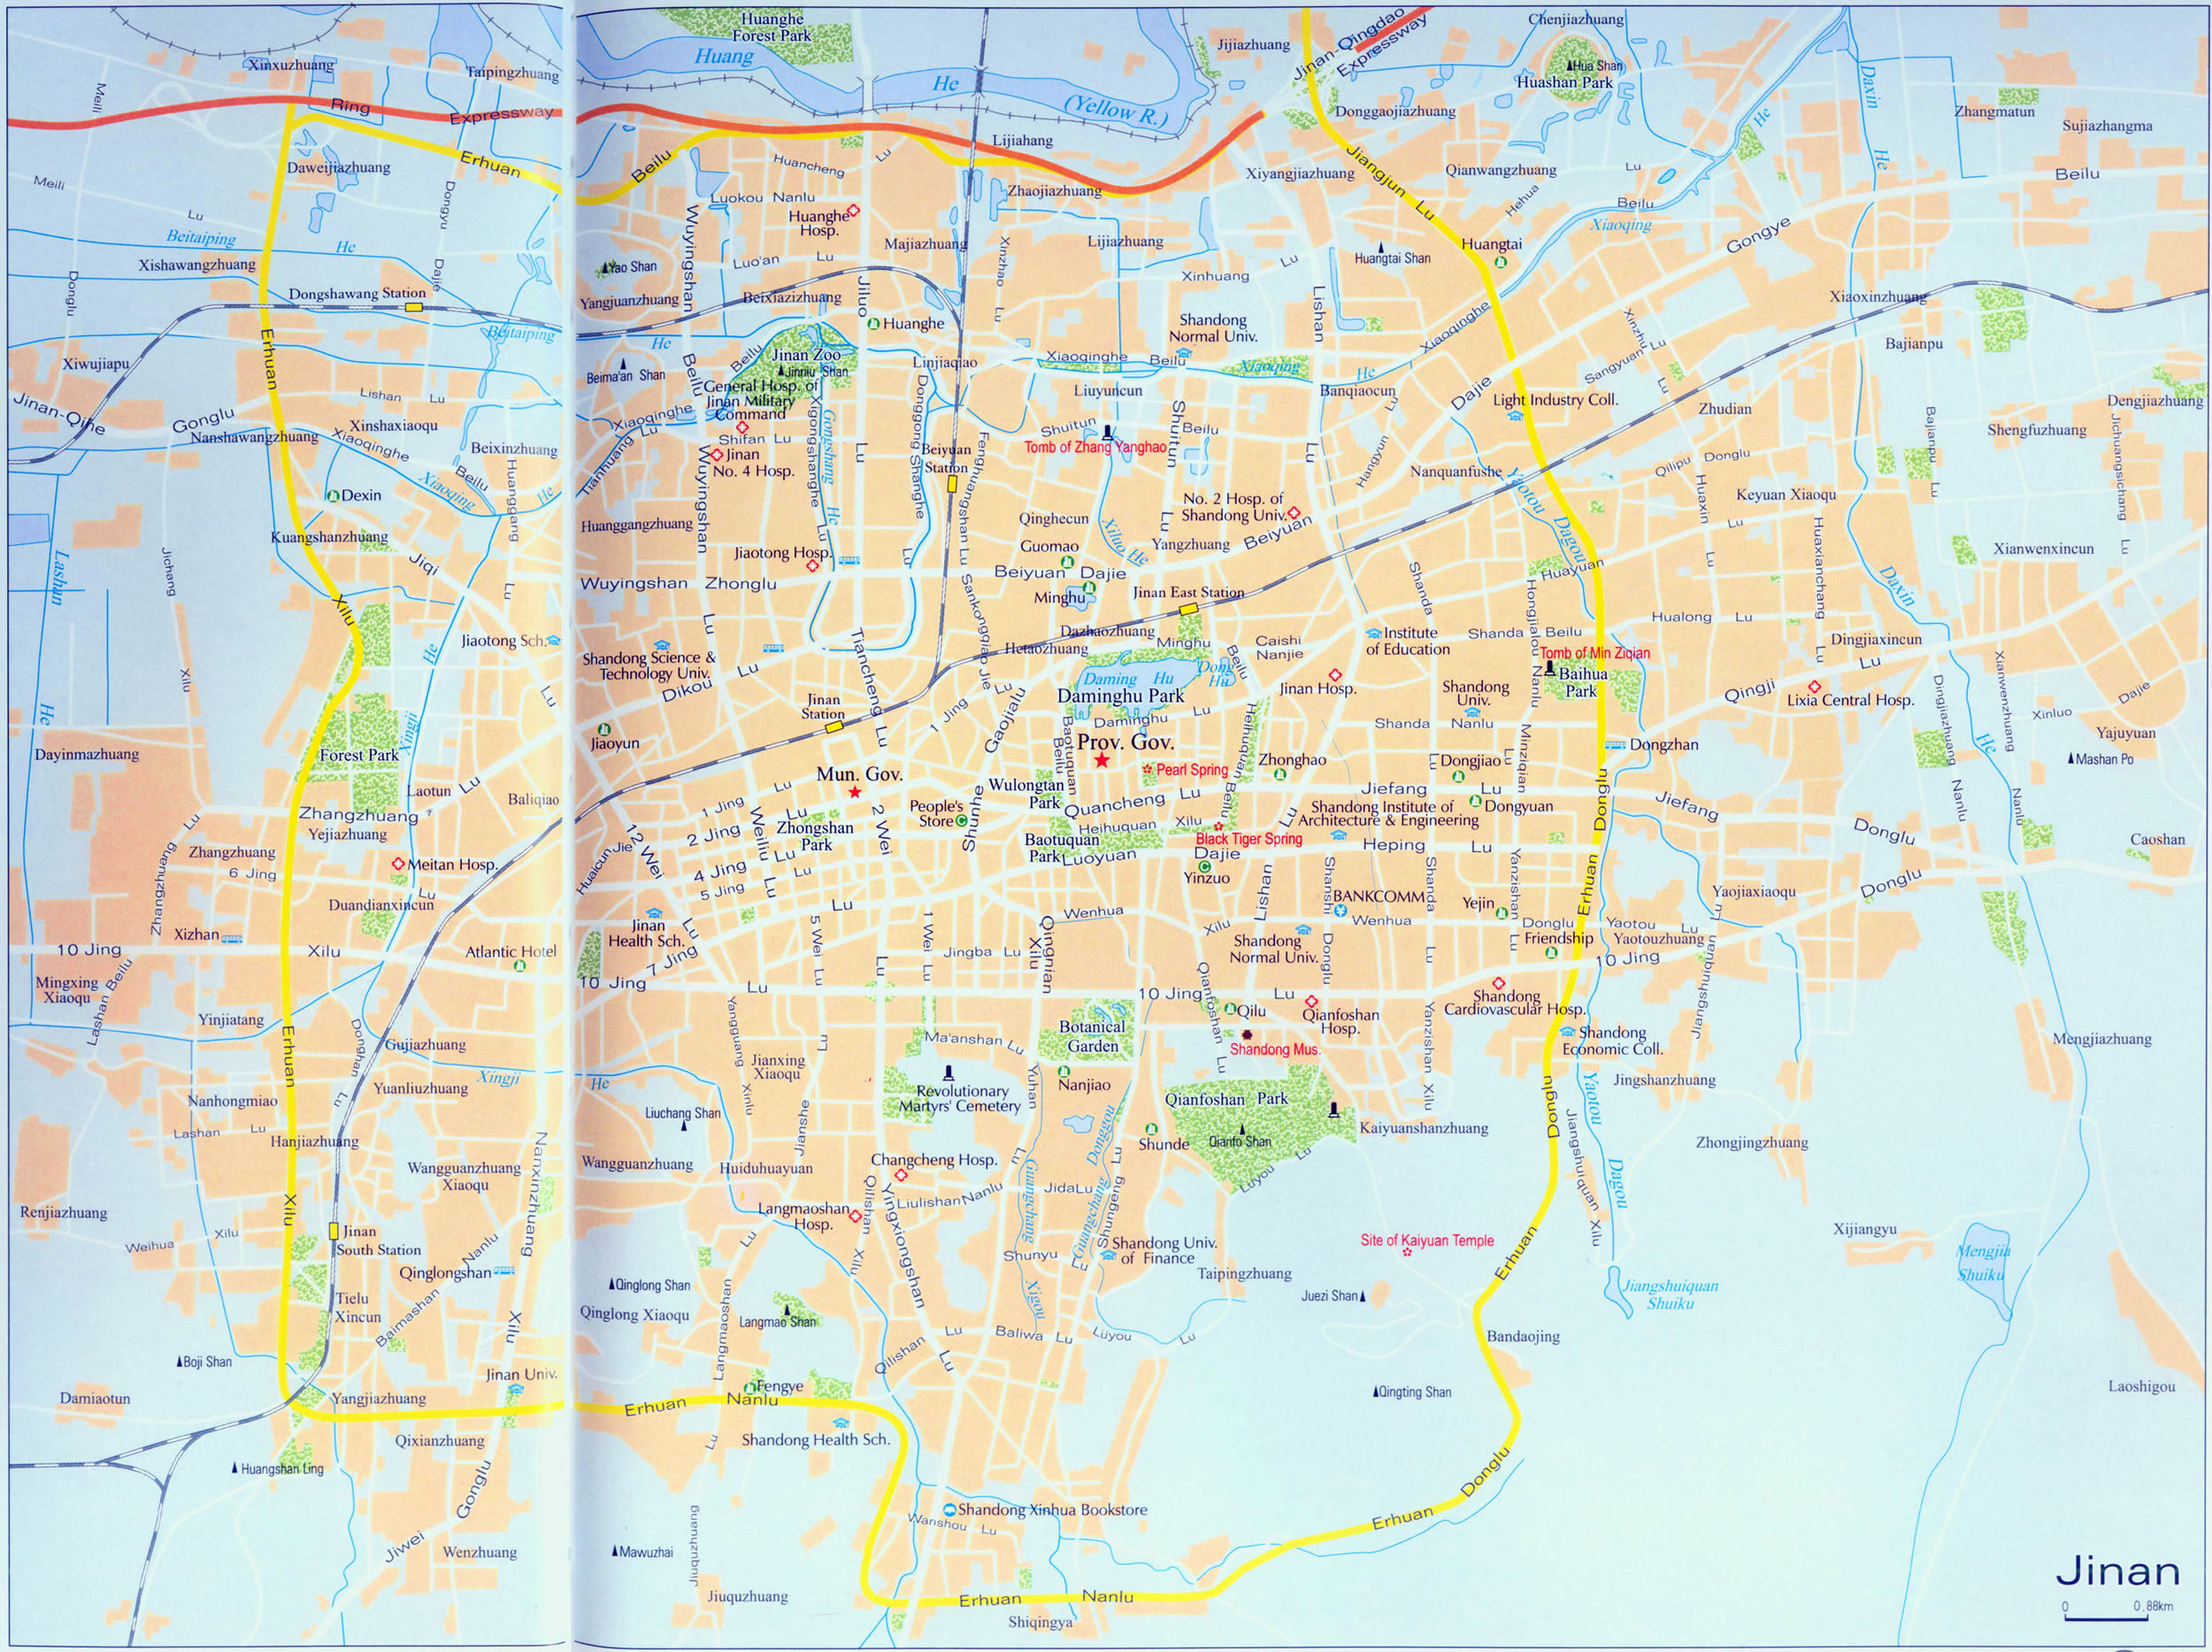 Jinan city map